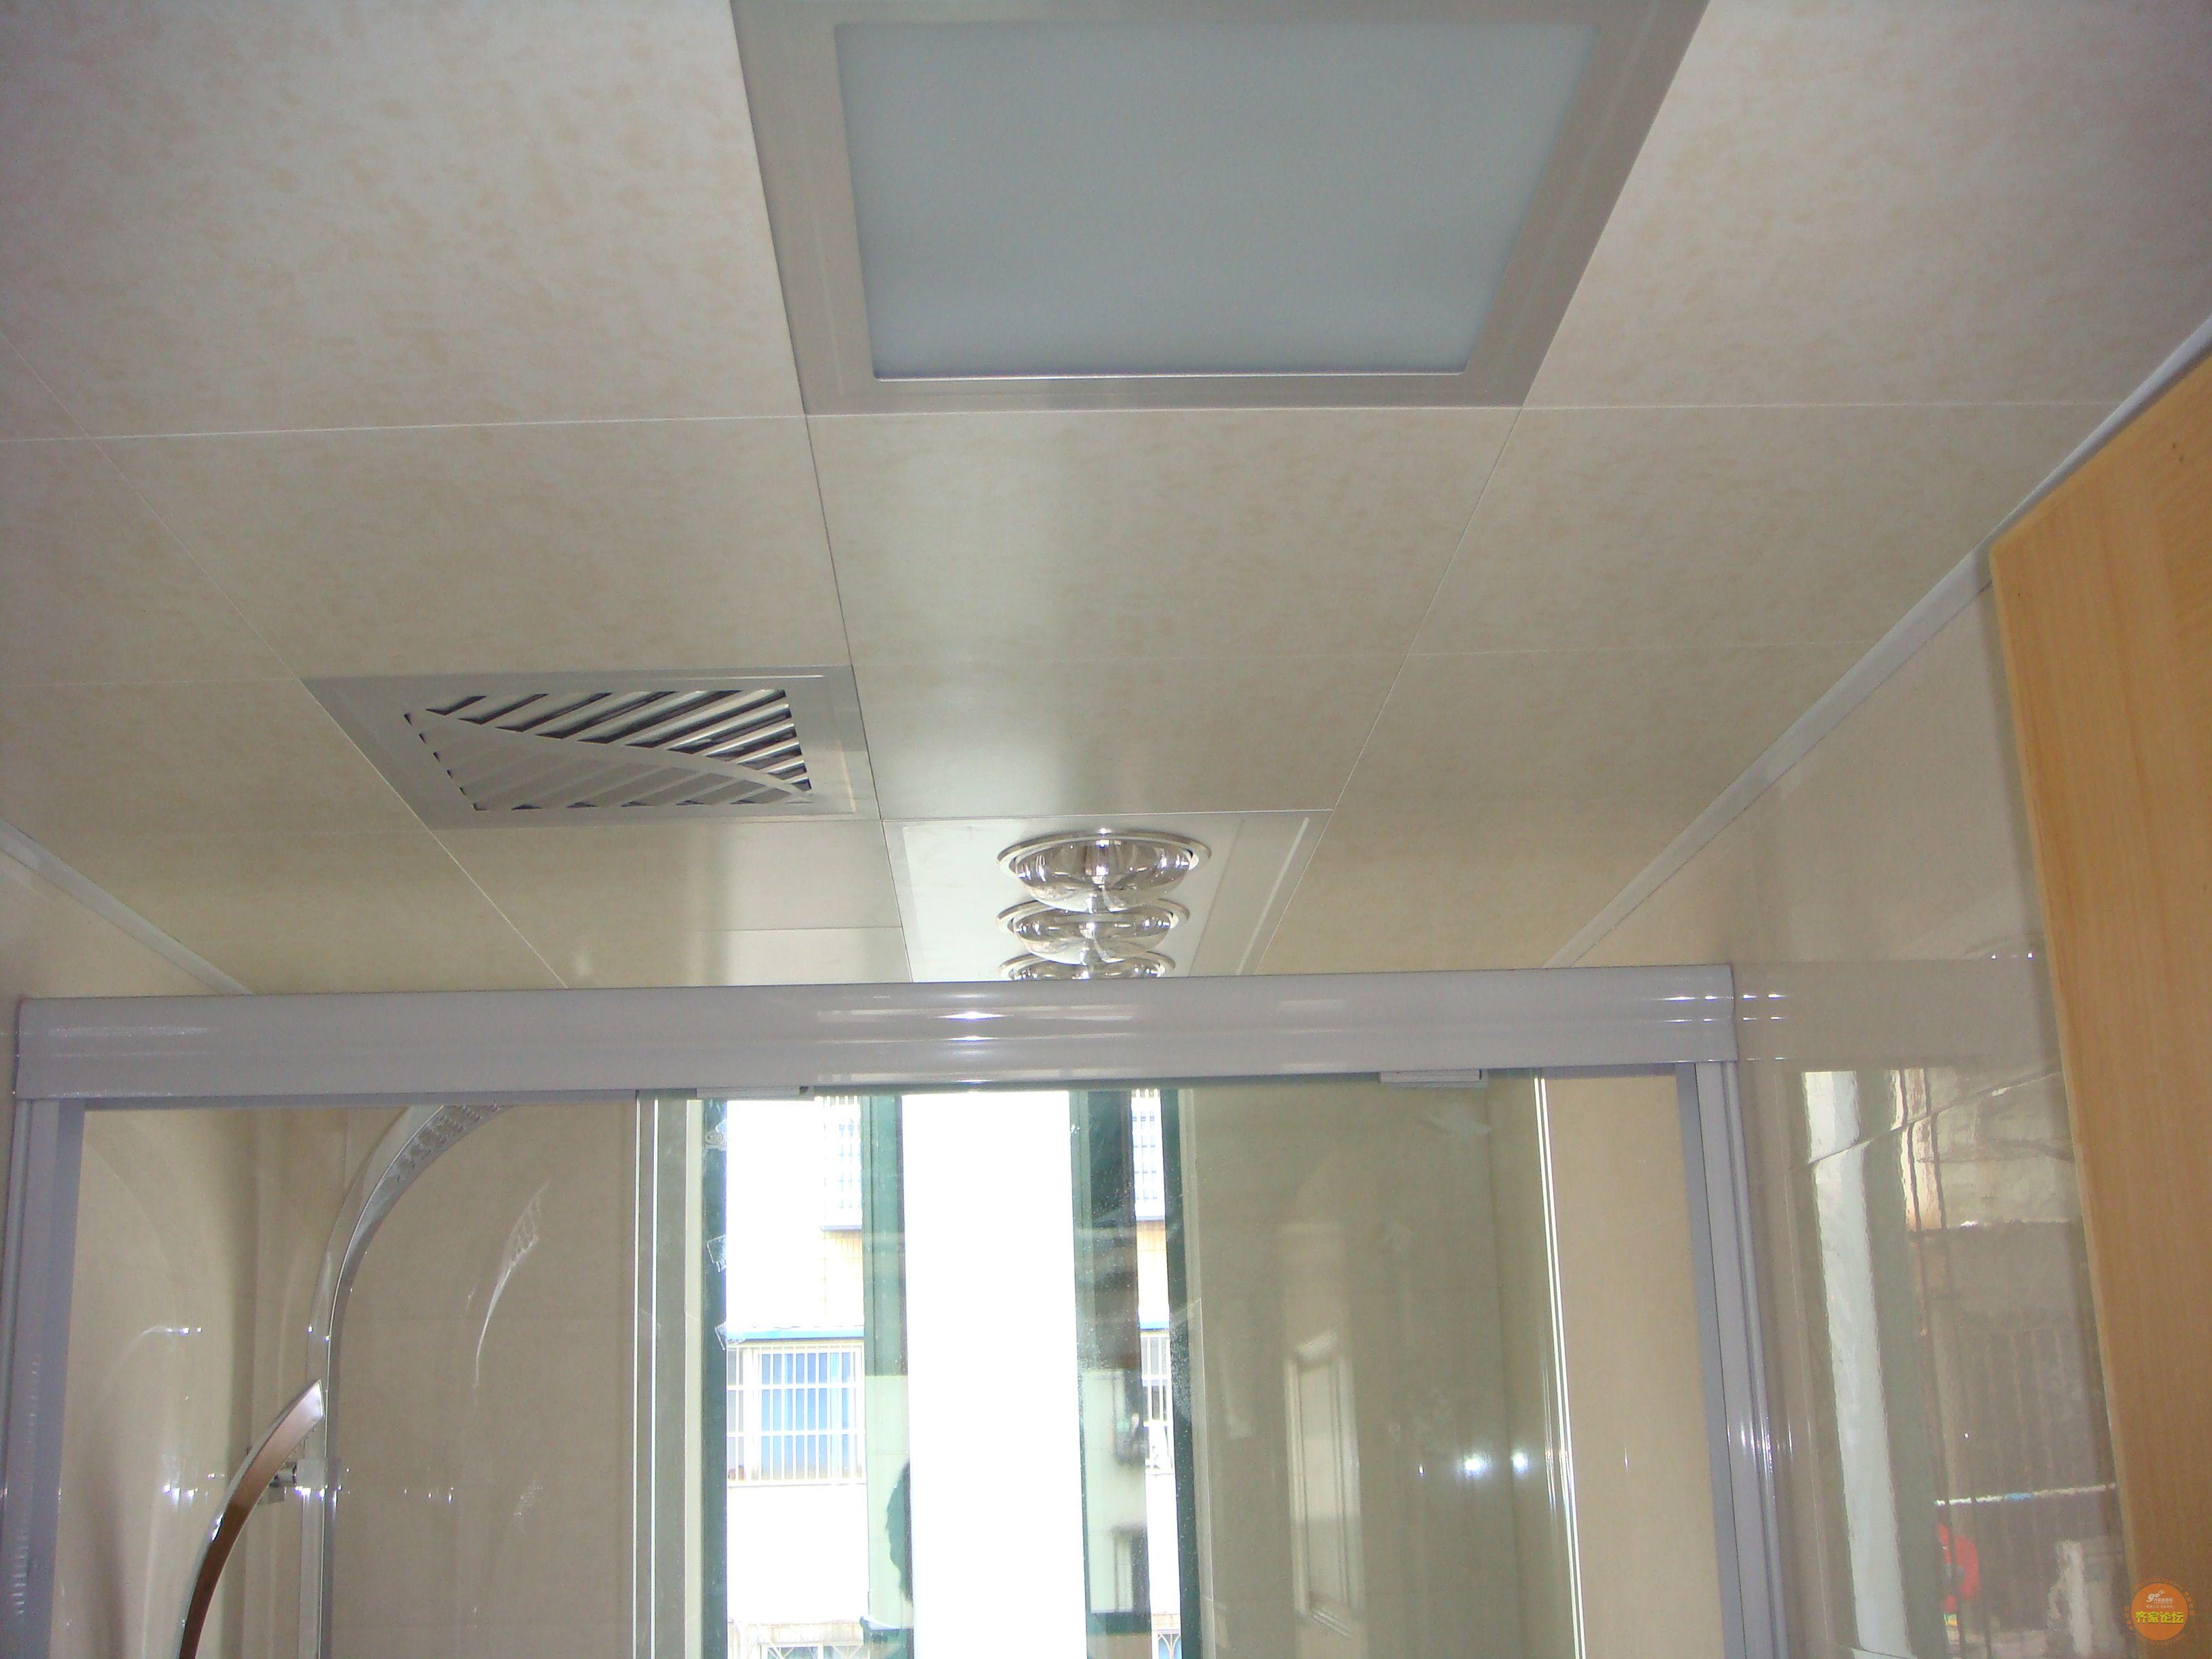 集成吊顶铝扣板大板厨房卫生间房间客厅造型天花板蜂窝板效果二级-阿里巴巴